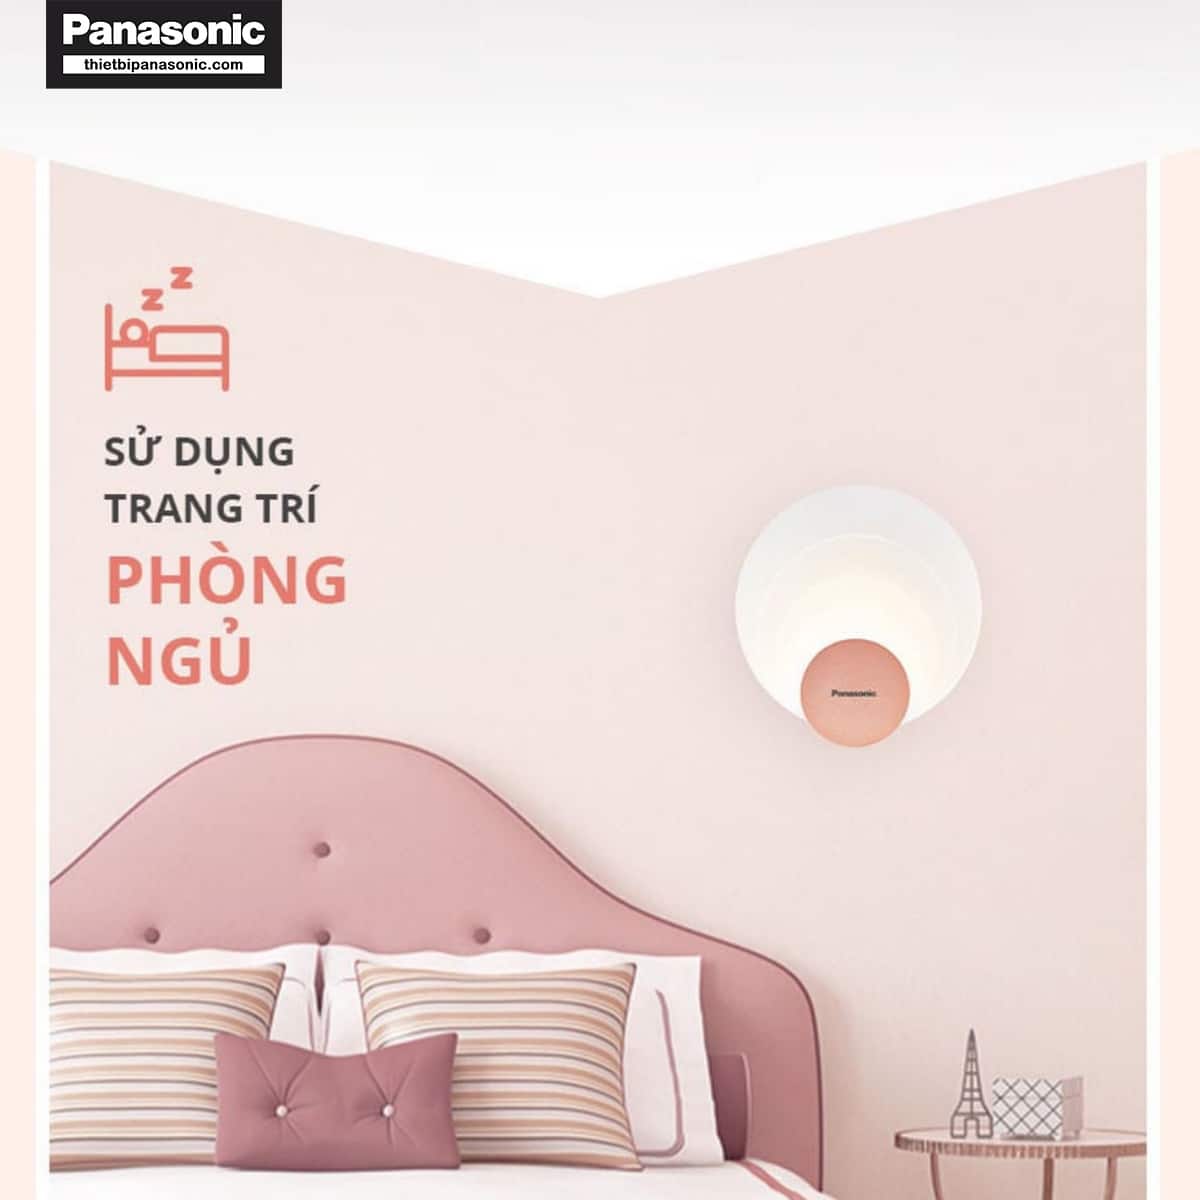 Đèn tường Panasonic HHGBW060688 được sử dụng để trang trí cho phòng ngủ với tông màu hồng dịu nhẹ